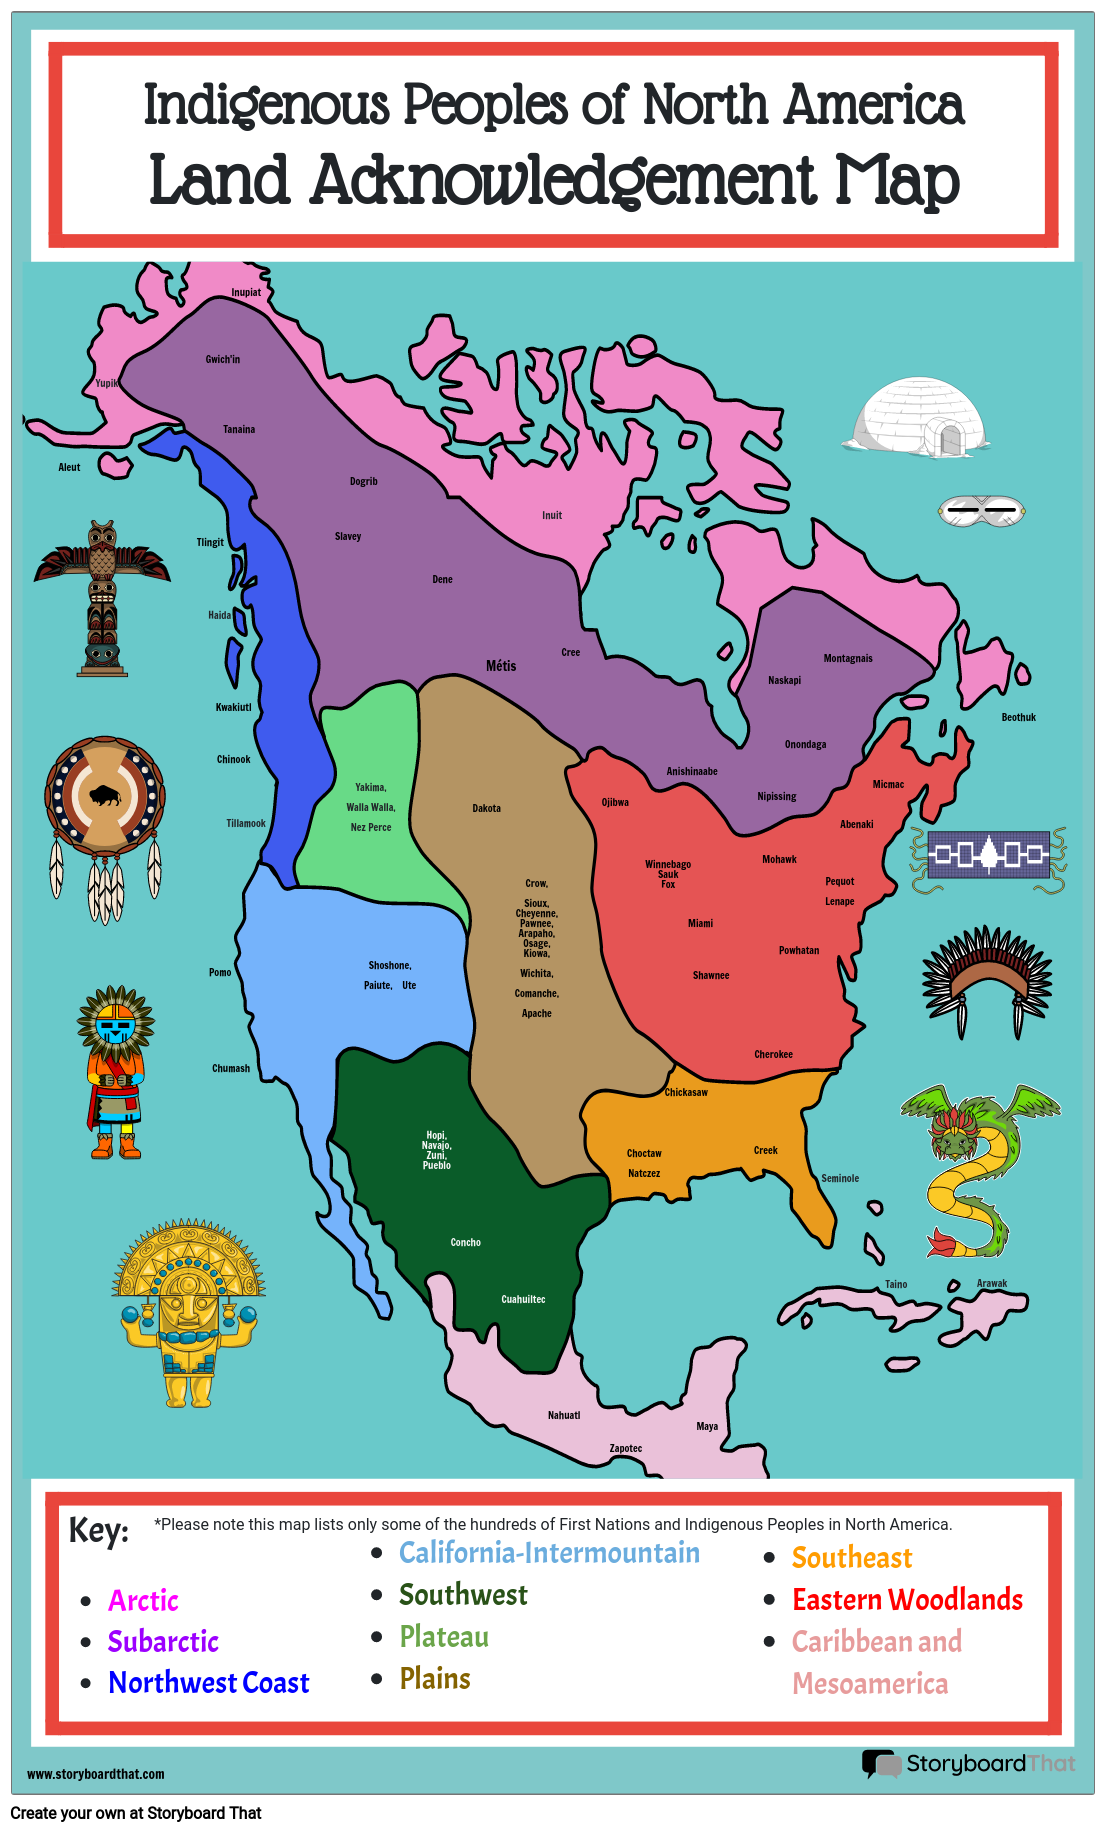 الشعوب الأصلية في أمريكا الشمالية ، خريطة إقرار الأرض